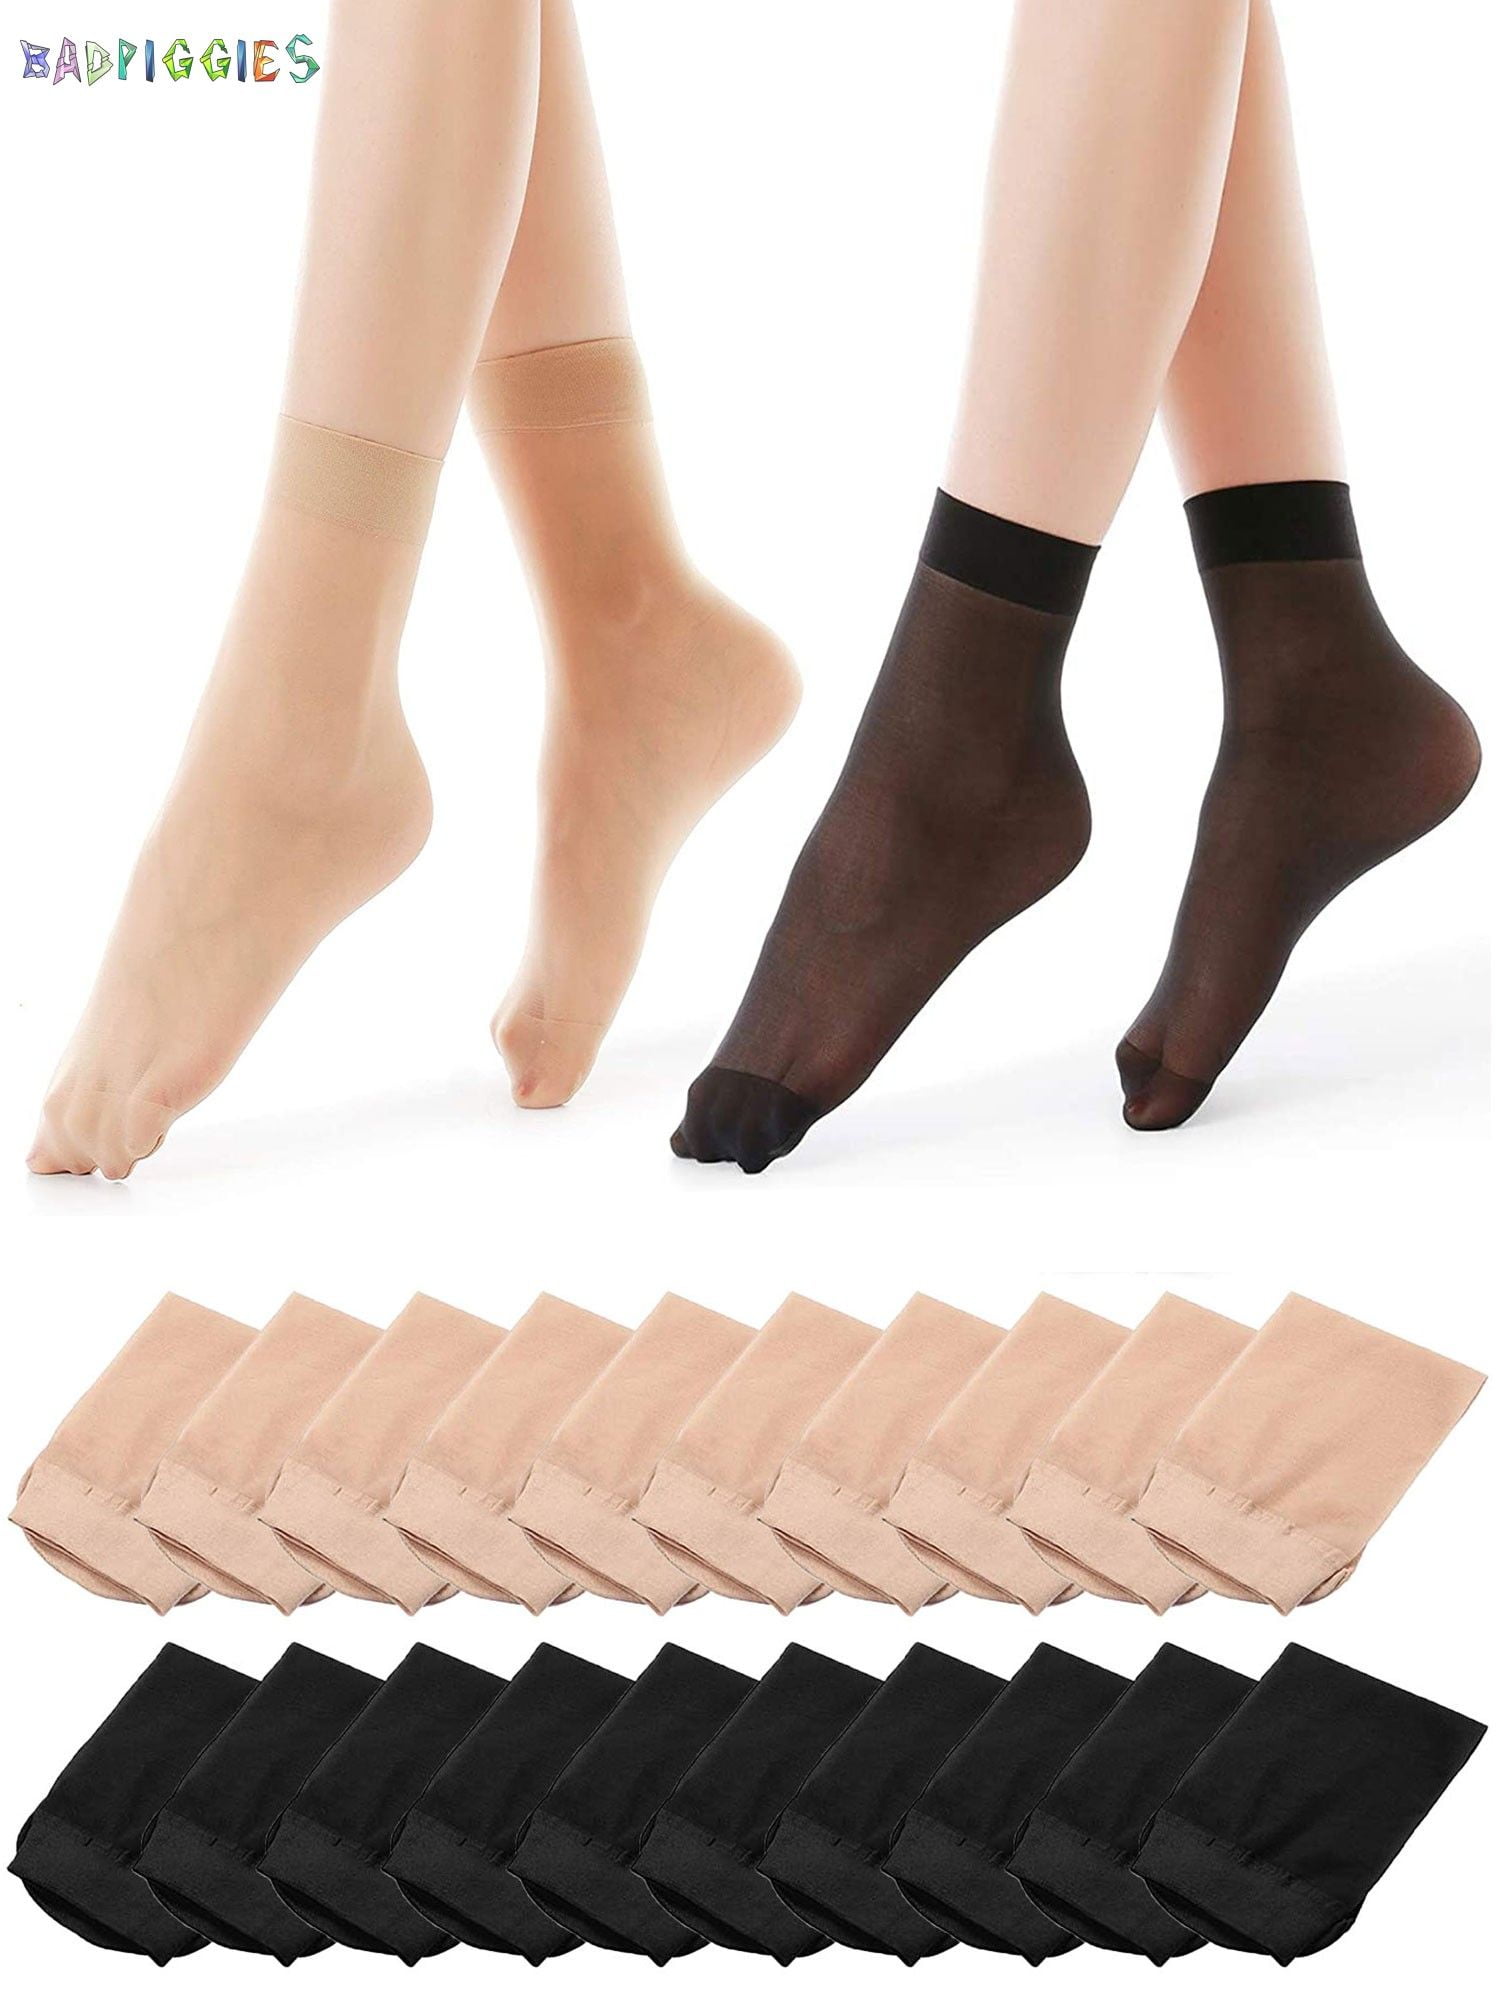 5 Pairs Ladies Short Stockings Sheer Elastic Knee Length Thin Silky Summer Socks